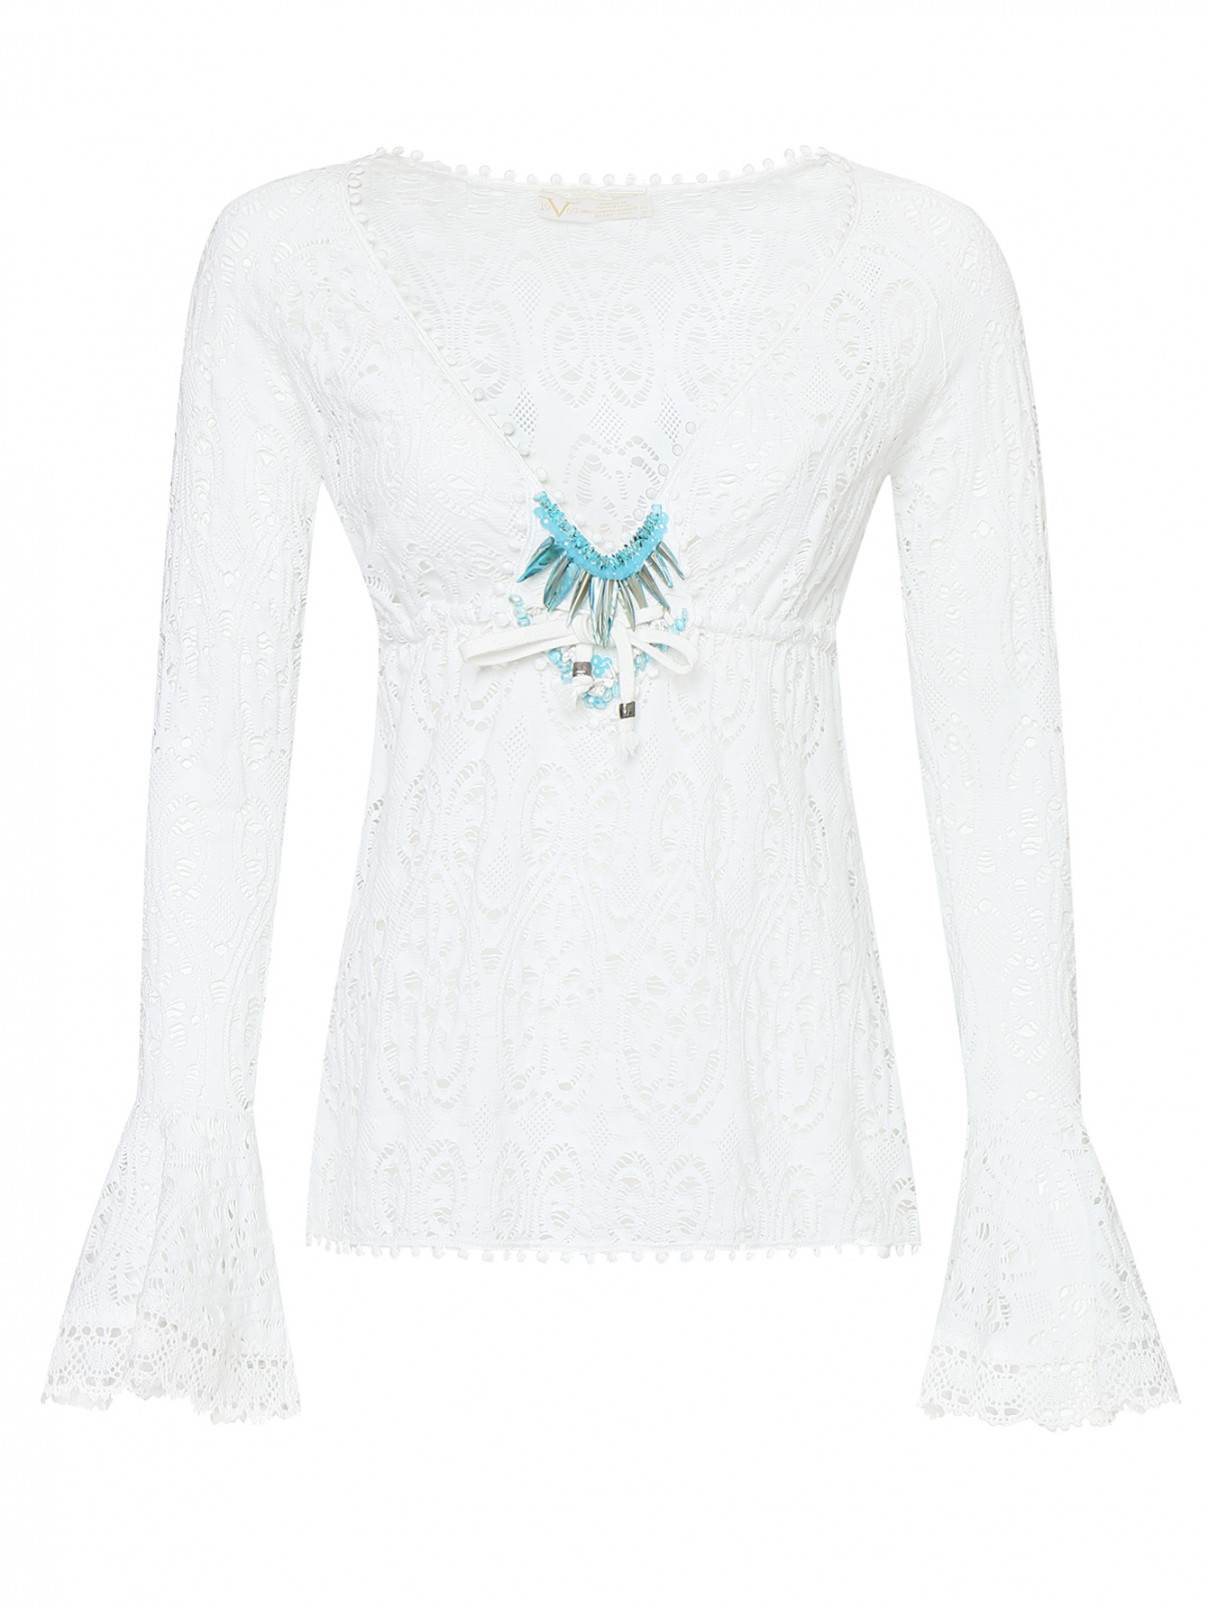 Джемпер из хлопка декорированный камнями Versace 1969  –  Общий вид  – Цвет:  Белый